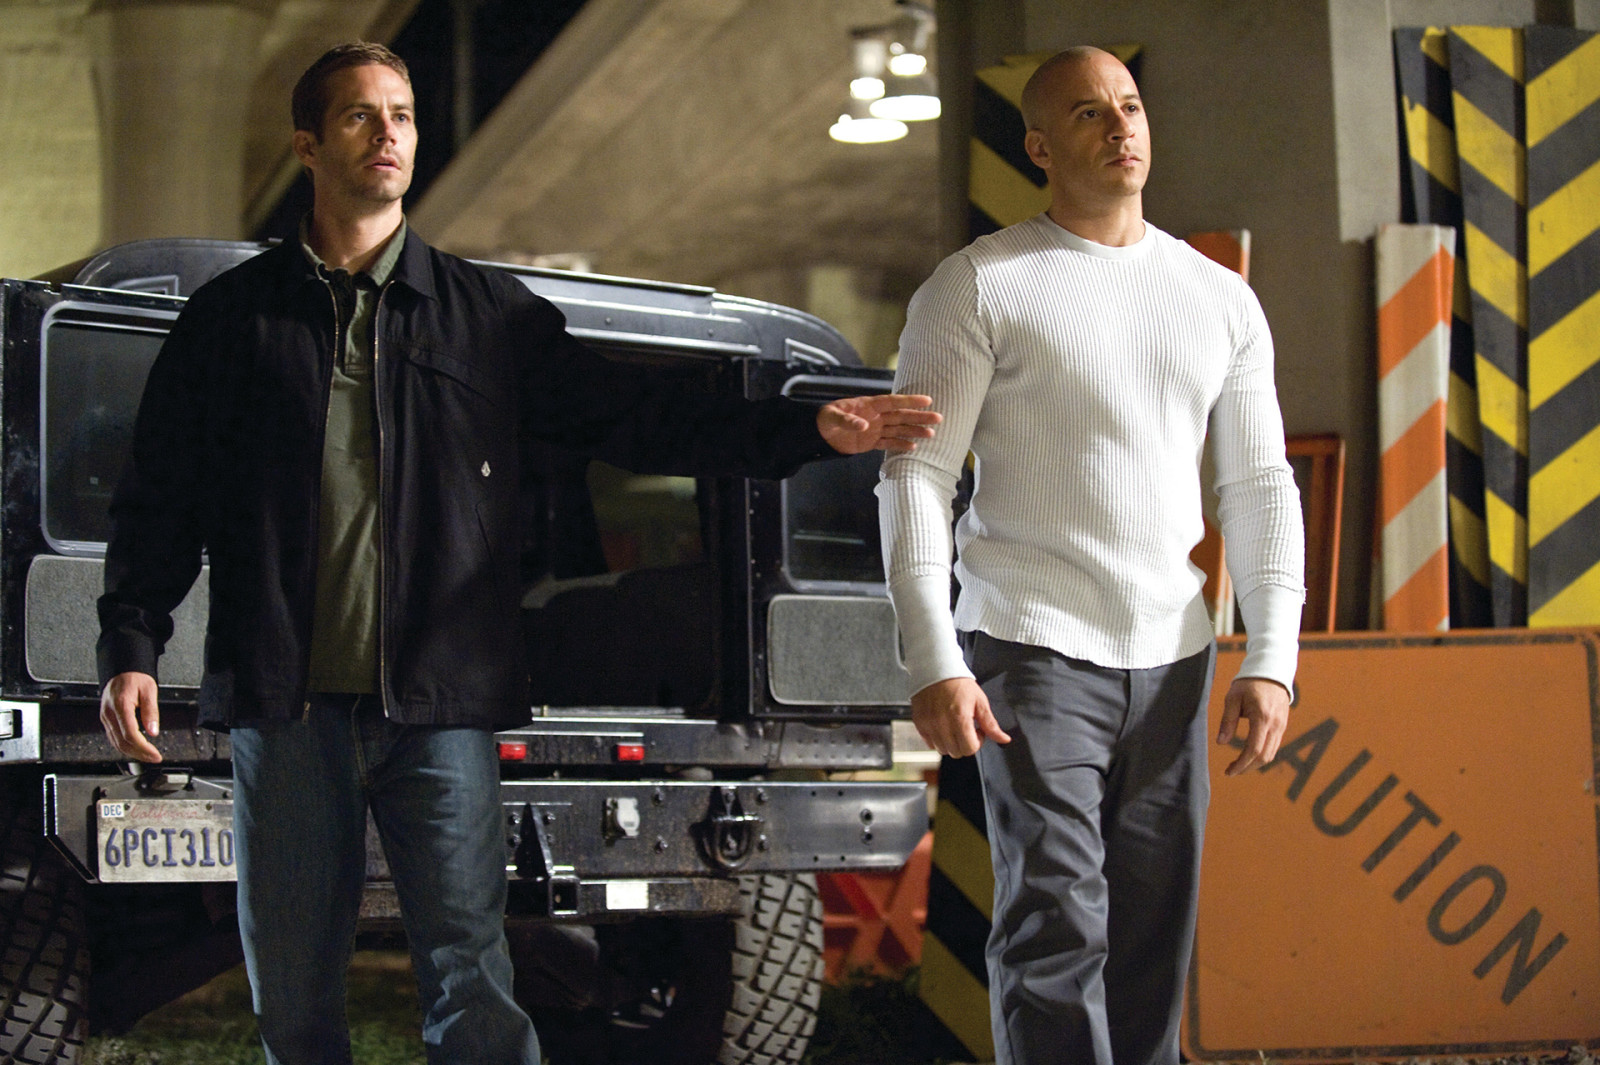 Vin Diesel, Đaminh Toretto, Paul Walker, Brian O'Conner